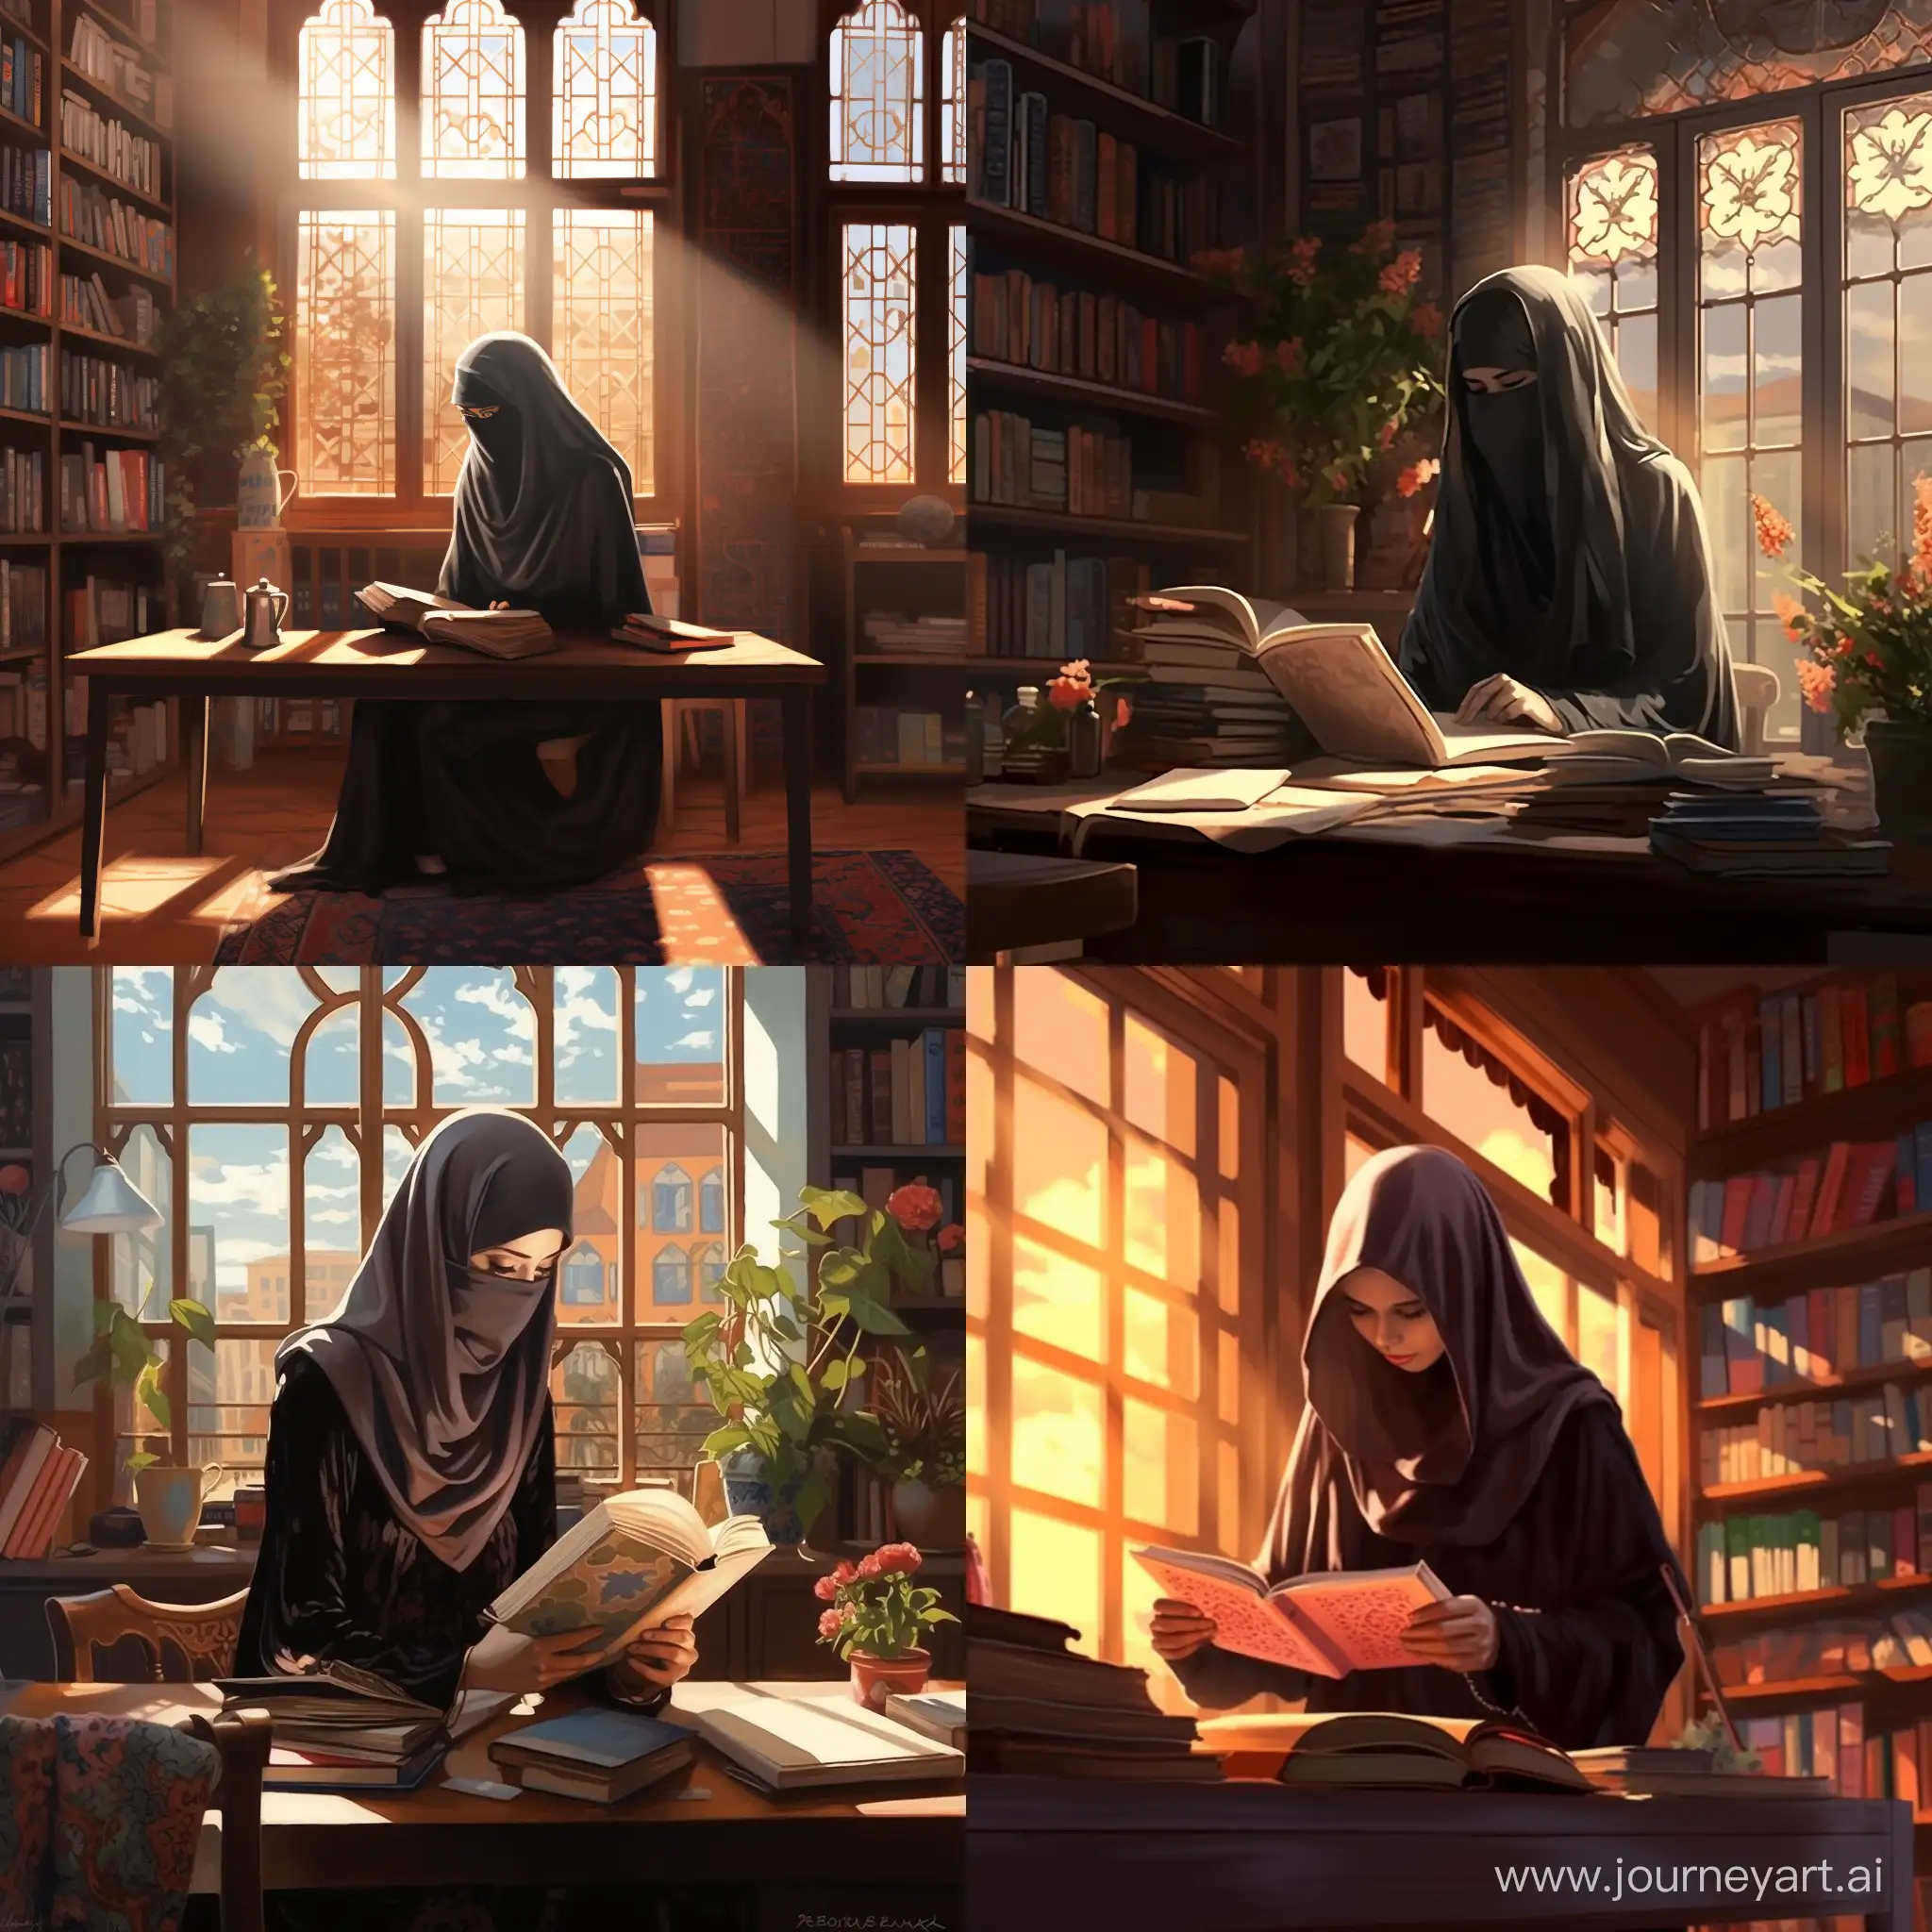 Девушка в никабе книги библиотека стол письмо ручка светлая комната солнце


